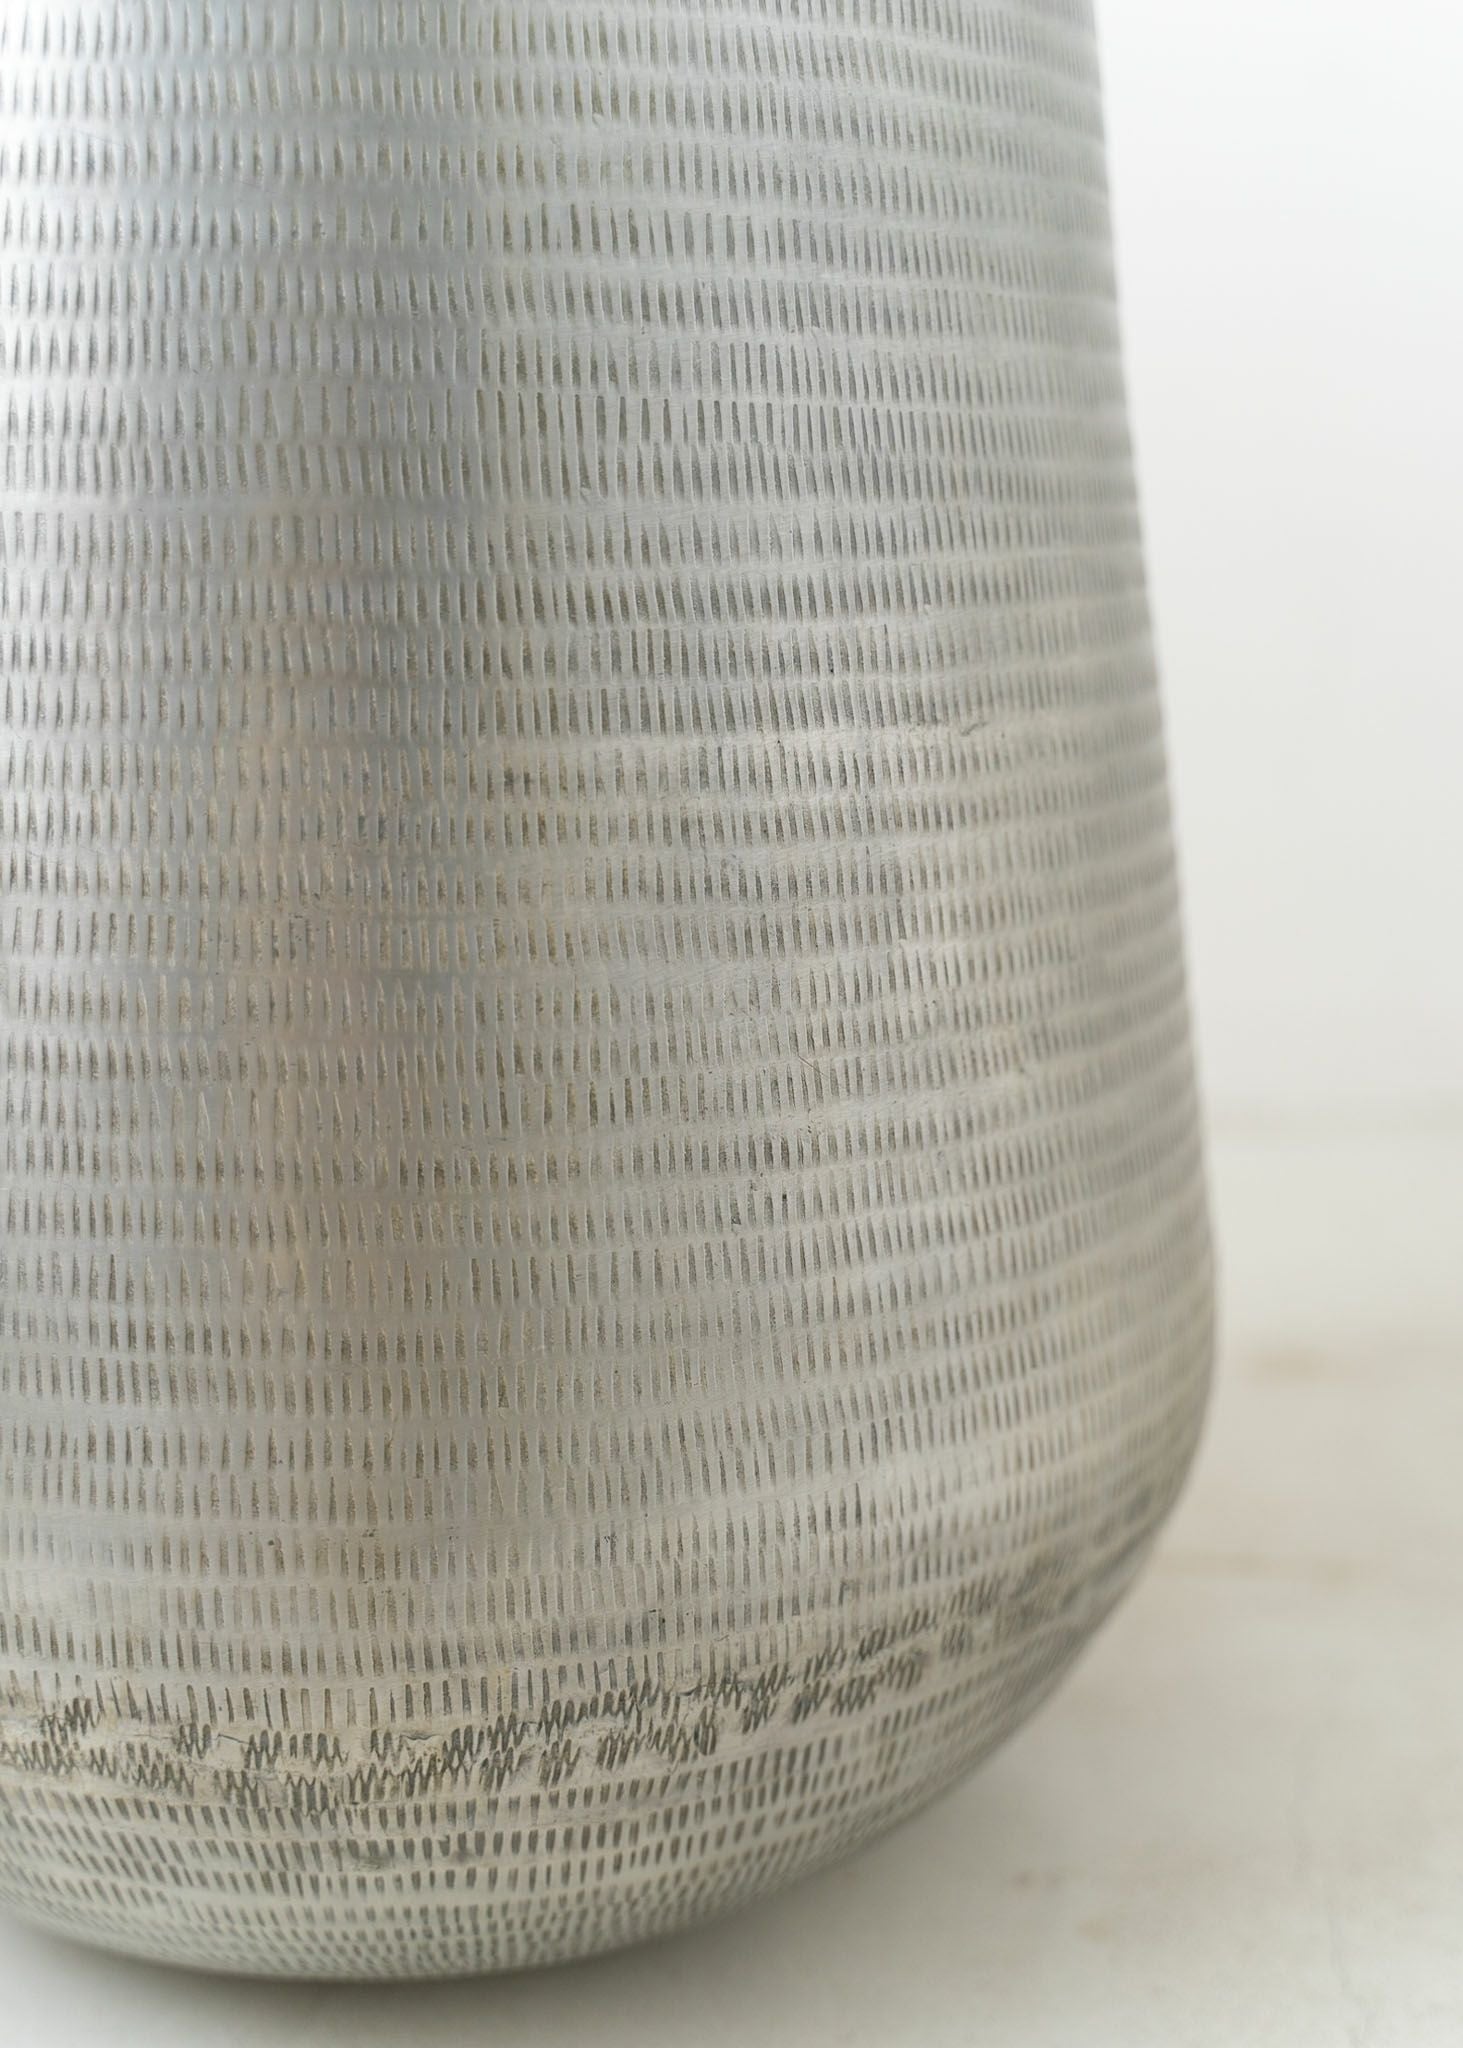 Artistic Aluminum Vase Rice Hammer